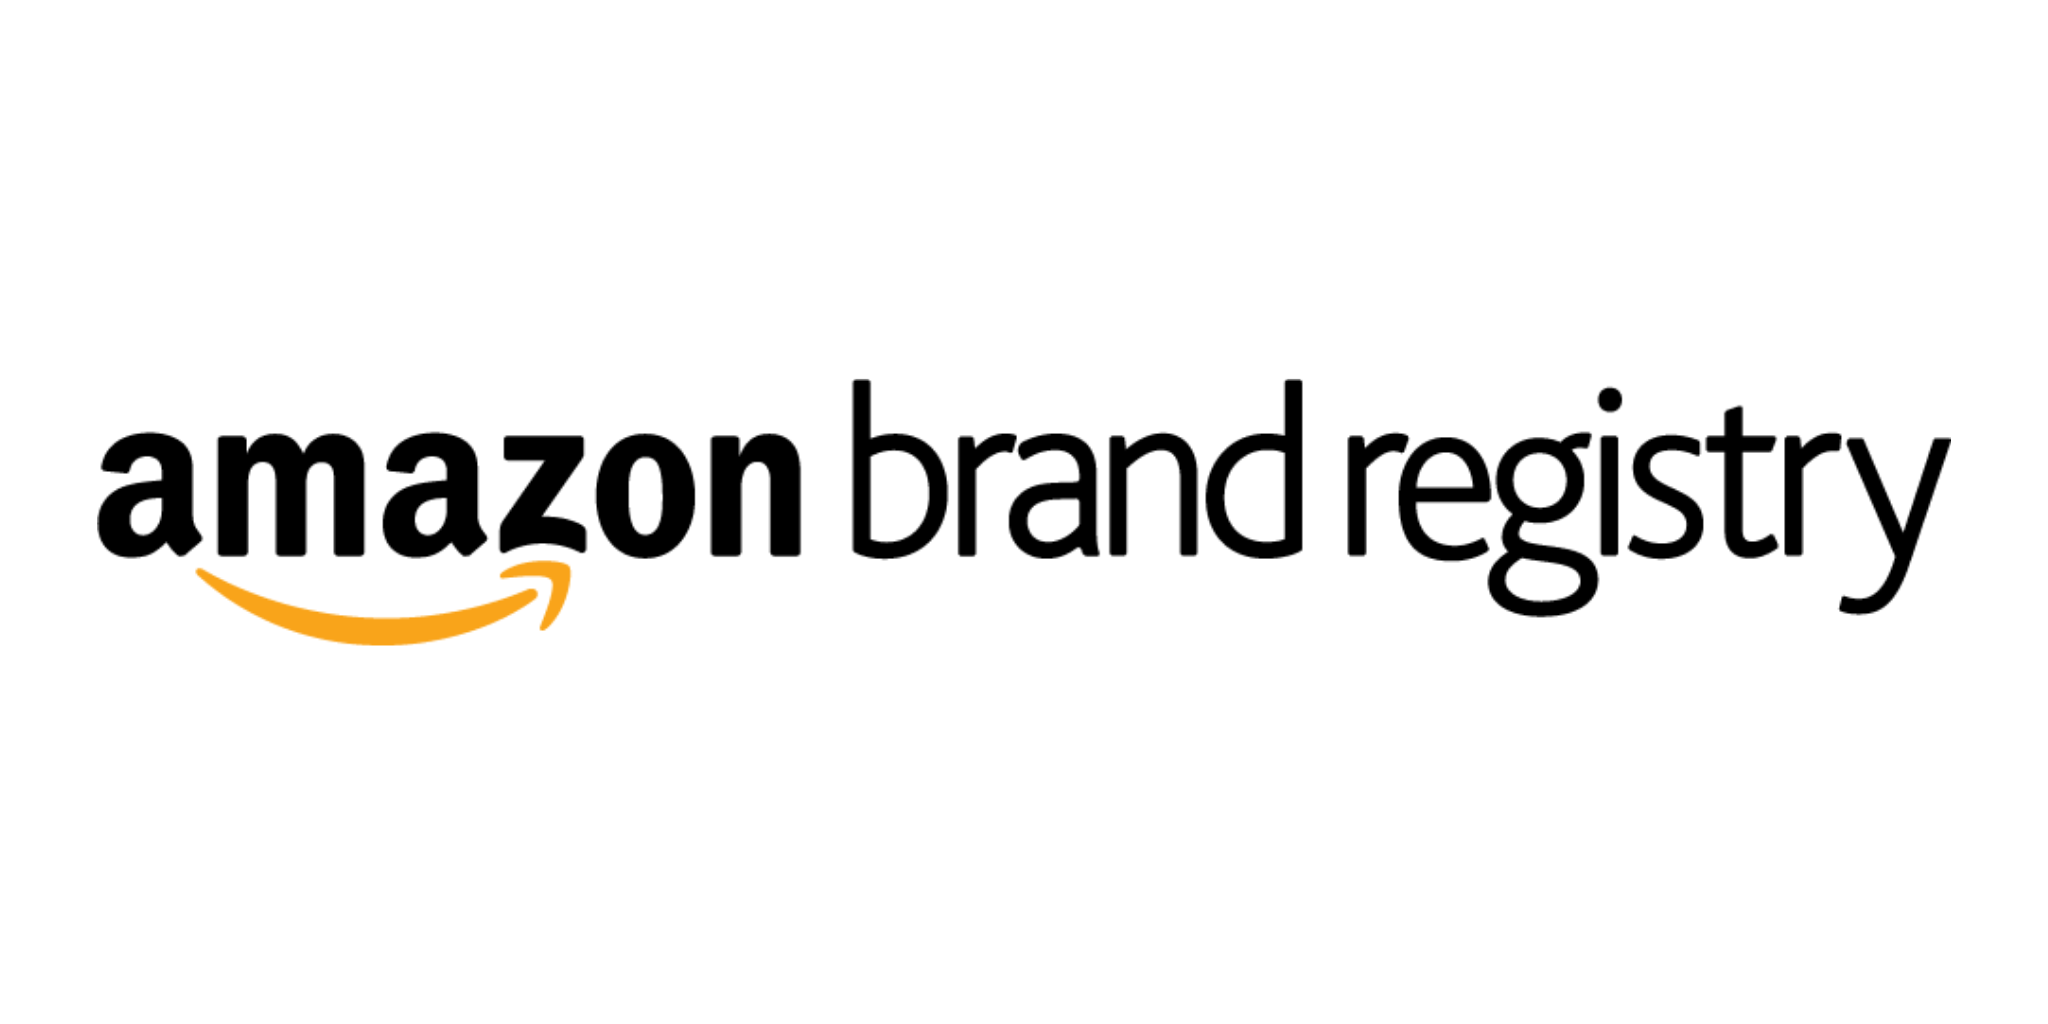 Amazon Brand Registery